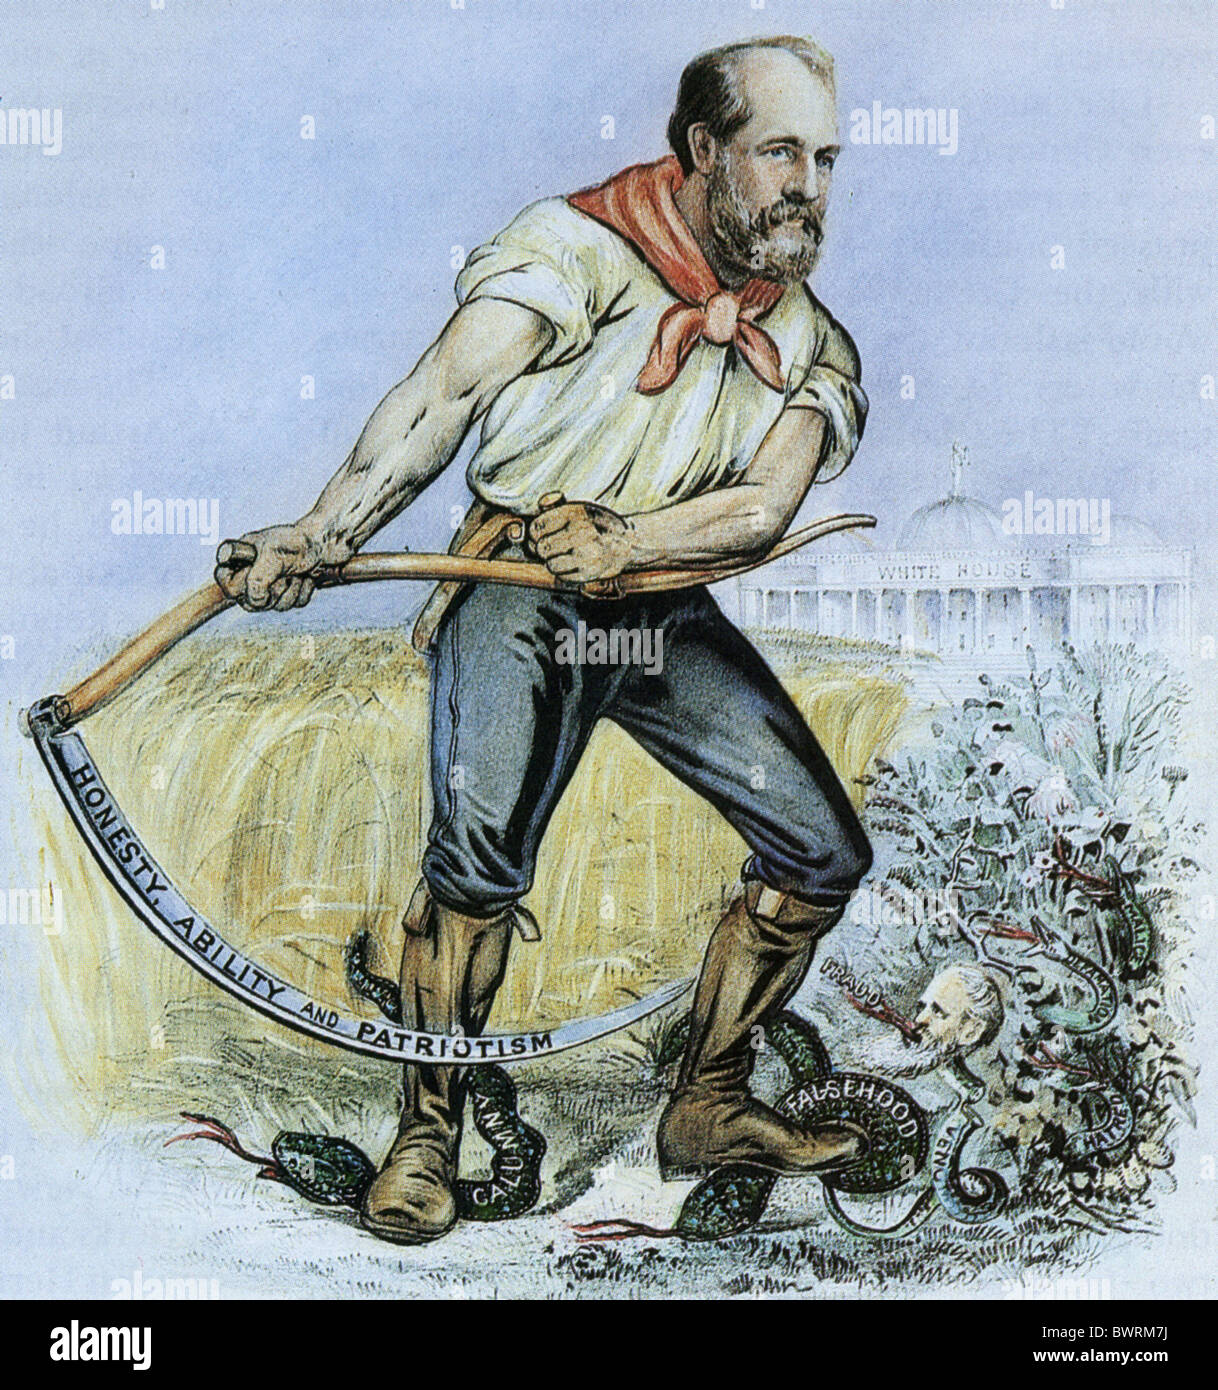 JAMES GARFIELD - 1880 Präsidentenkampagne Lithographie als Landwirt Garfield. Siehe Beschreibung unten. Stockfoto